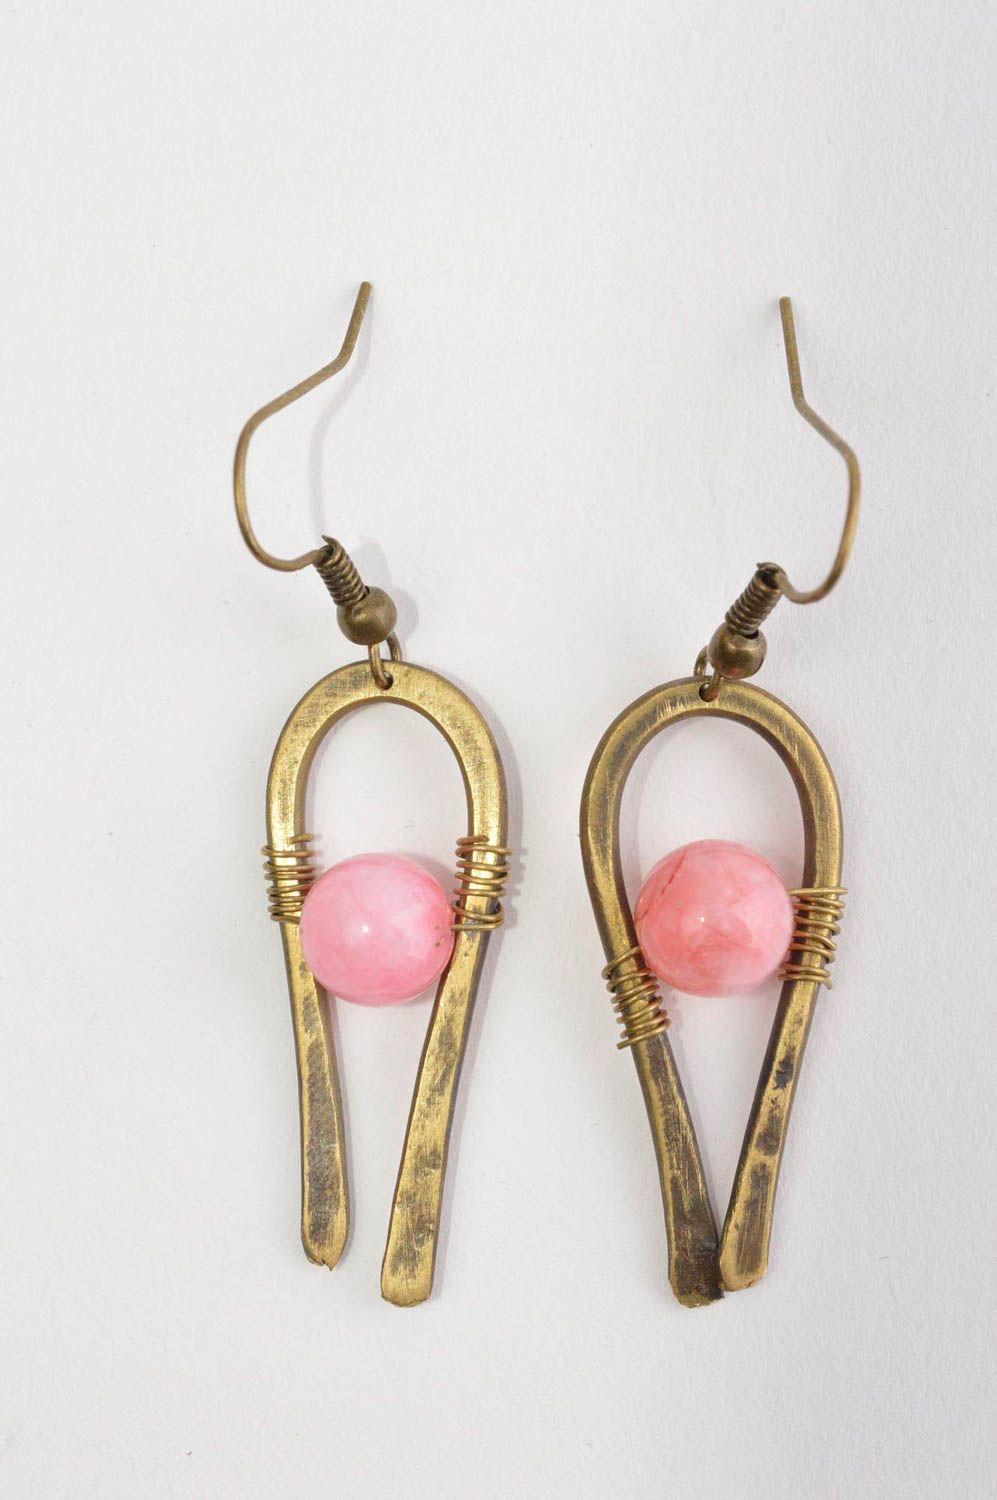 Украшение из латуни handmade серьги из натуральных камней модные серьги розовые фото 2